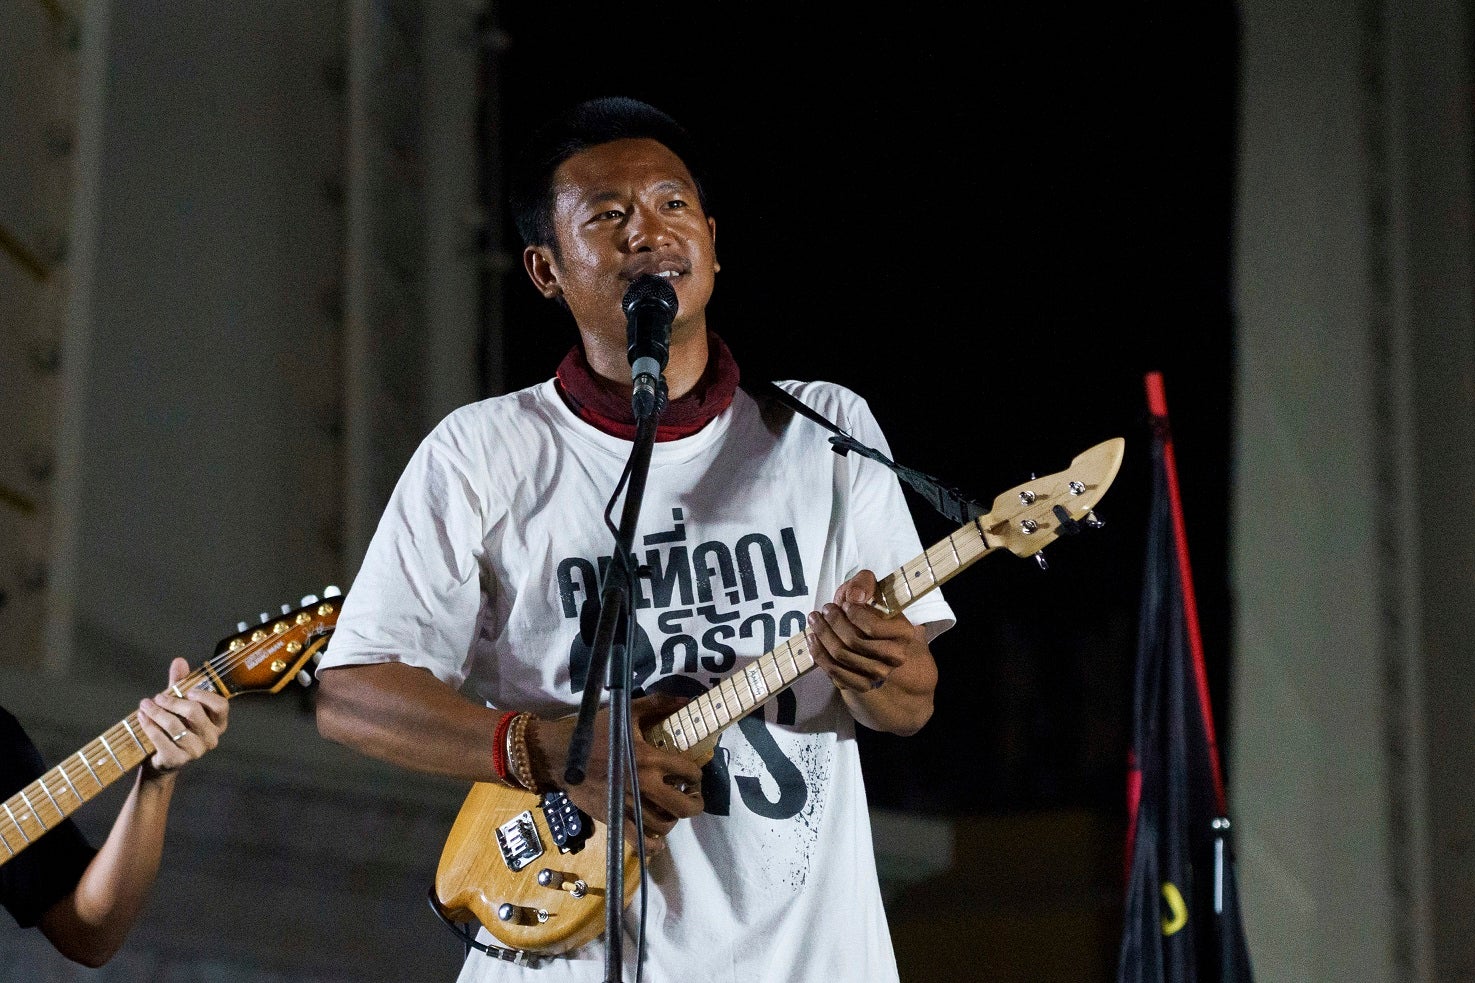 Jatupat "Pai" Boonpattararaksa plays his Isan Harp during the demonstration.